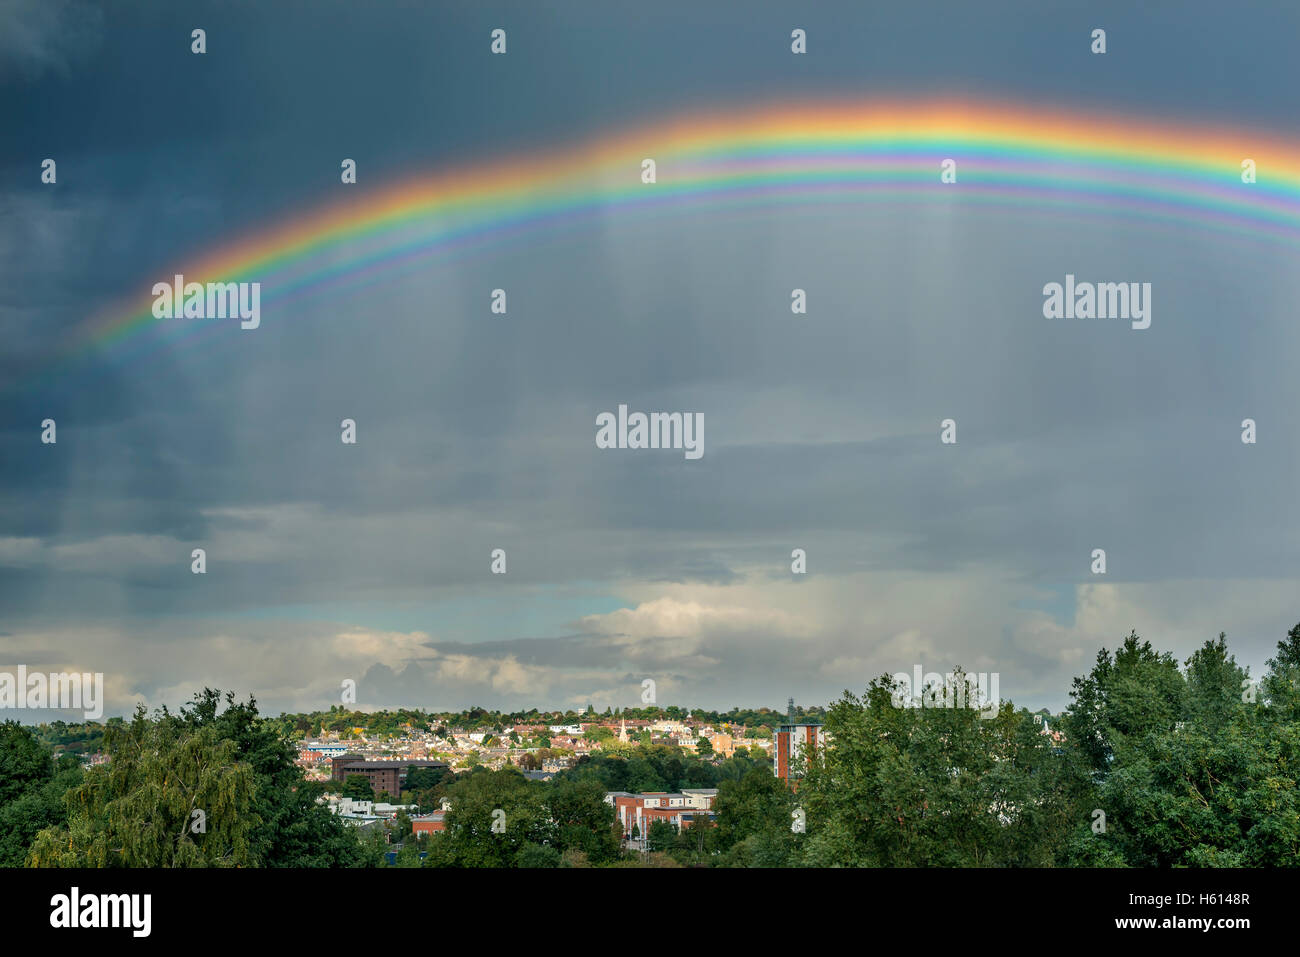 Raro y extraño múltiples arco iris sobre una ciudad inglesa Foto de stock